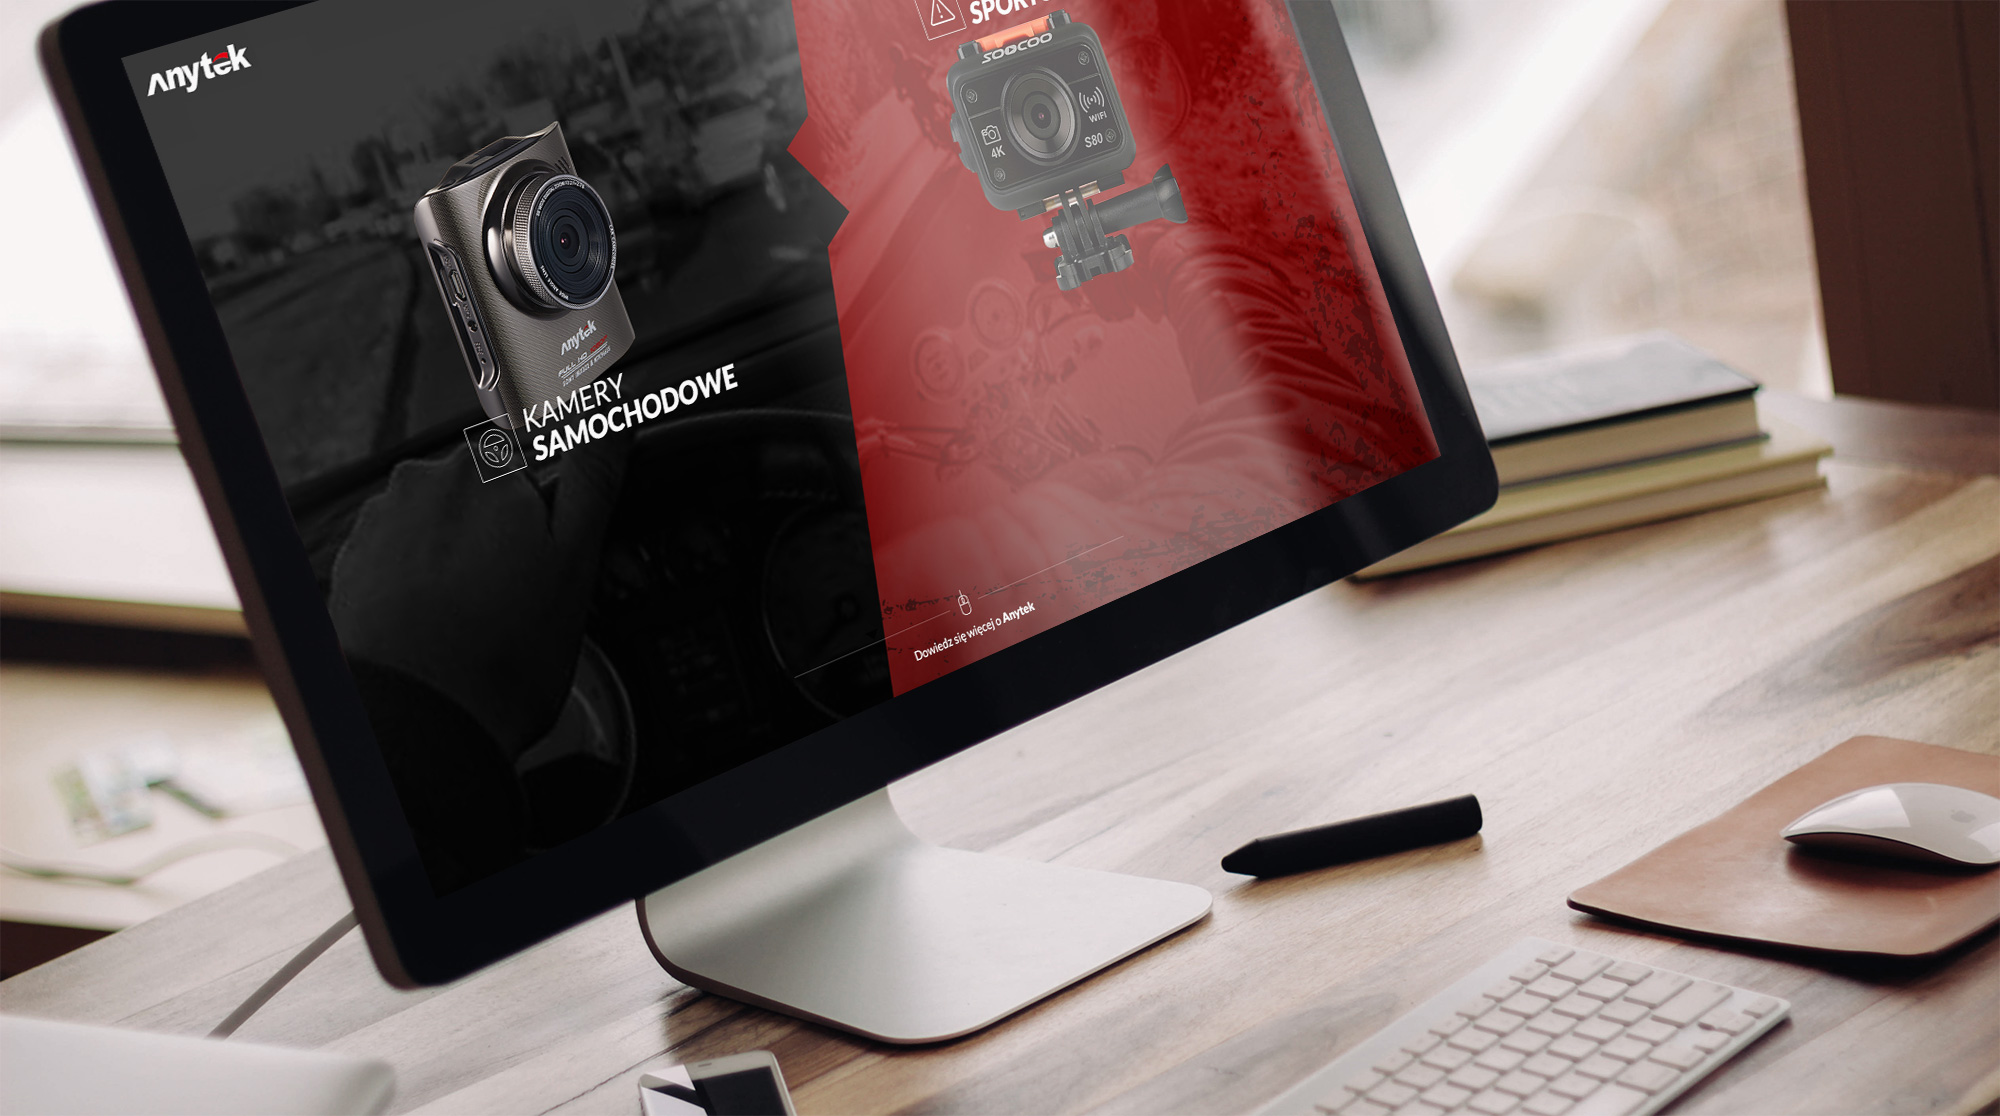 Anytek - nowoczesna strona internetowa produktowa - kamery samochodowe, wideorejestratory, elektronika